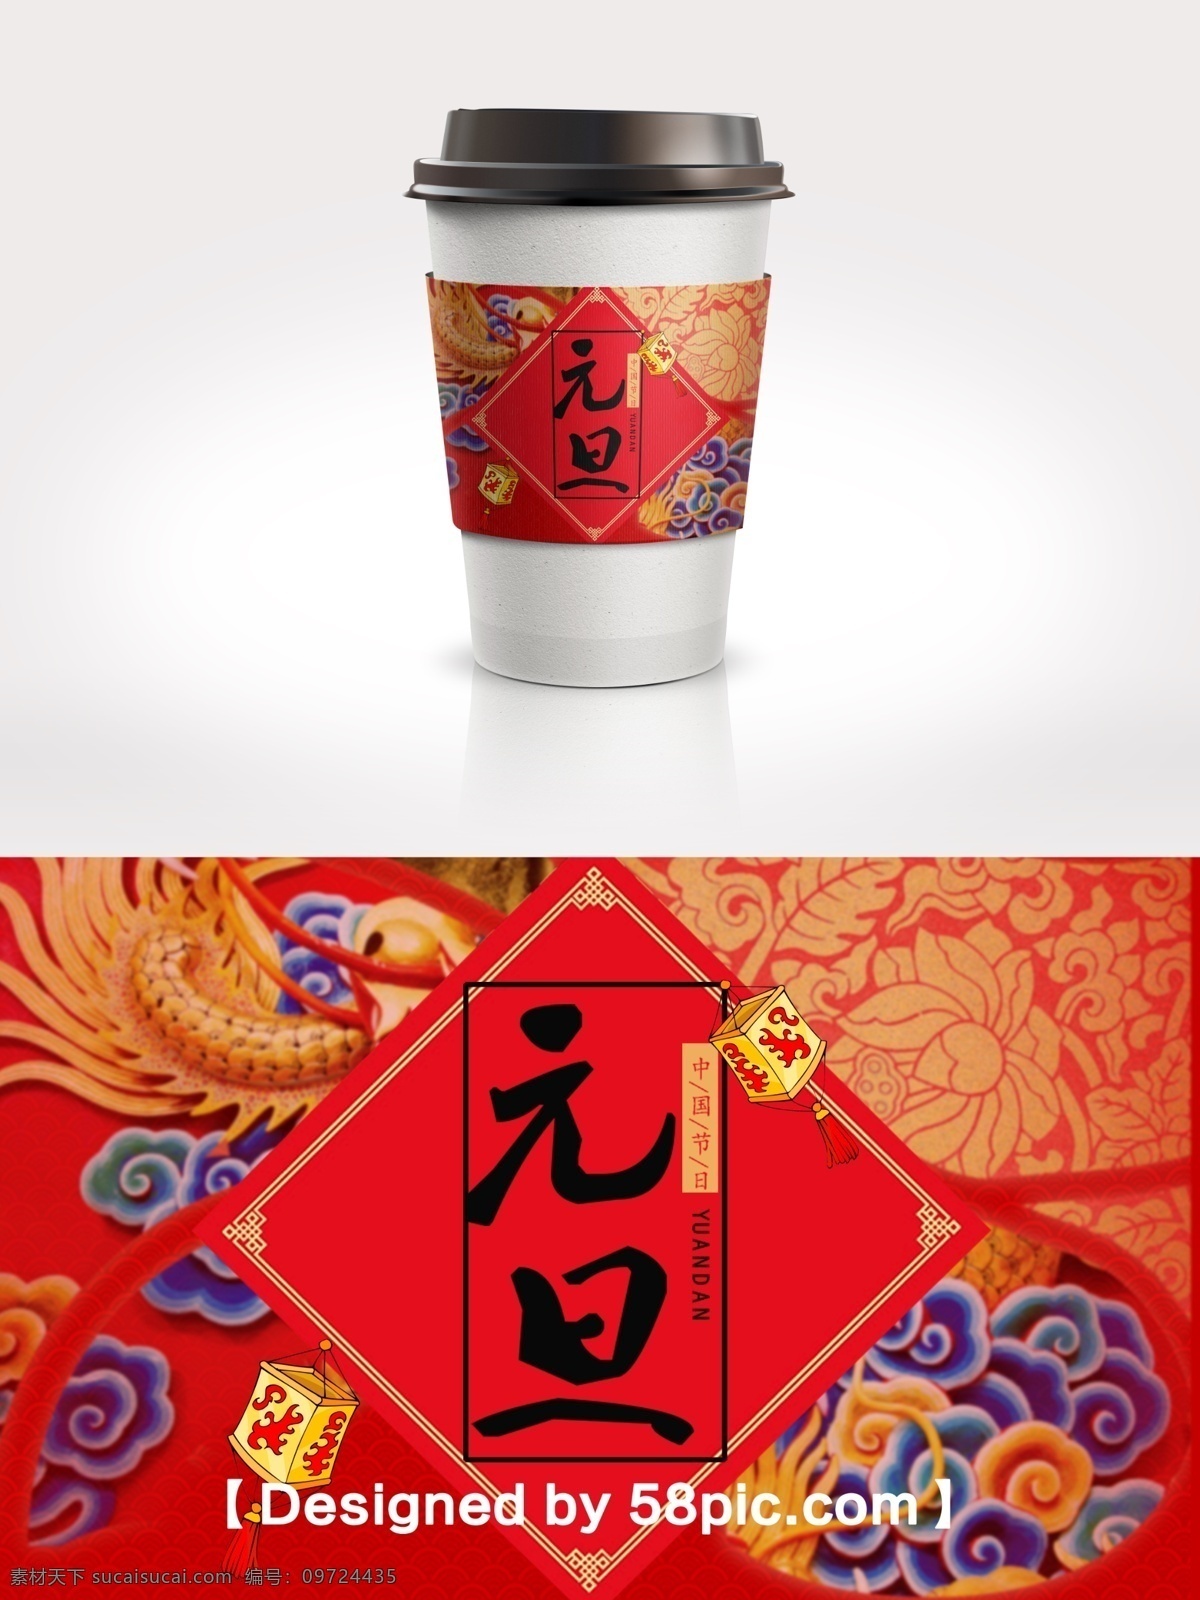 中国 风 元旦 佳节 喜气 咖啡杯 套 psd素材 灯笼素材 广告设计模版 咖啡杯套设计 喜庆大气 新春包装设计 元旦佳节 中国风